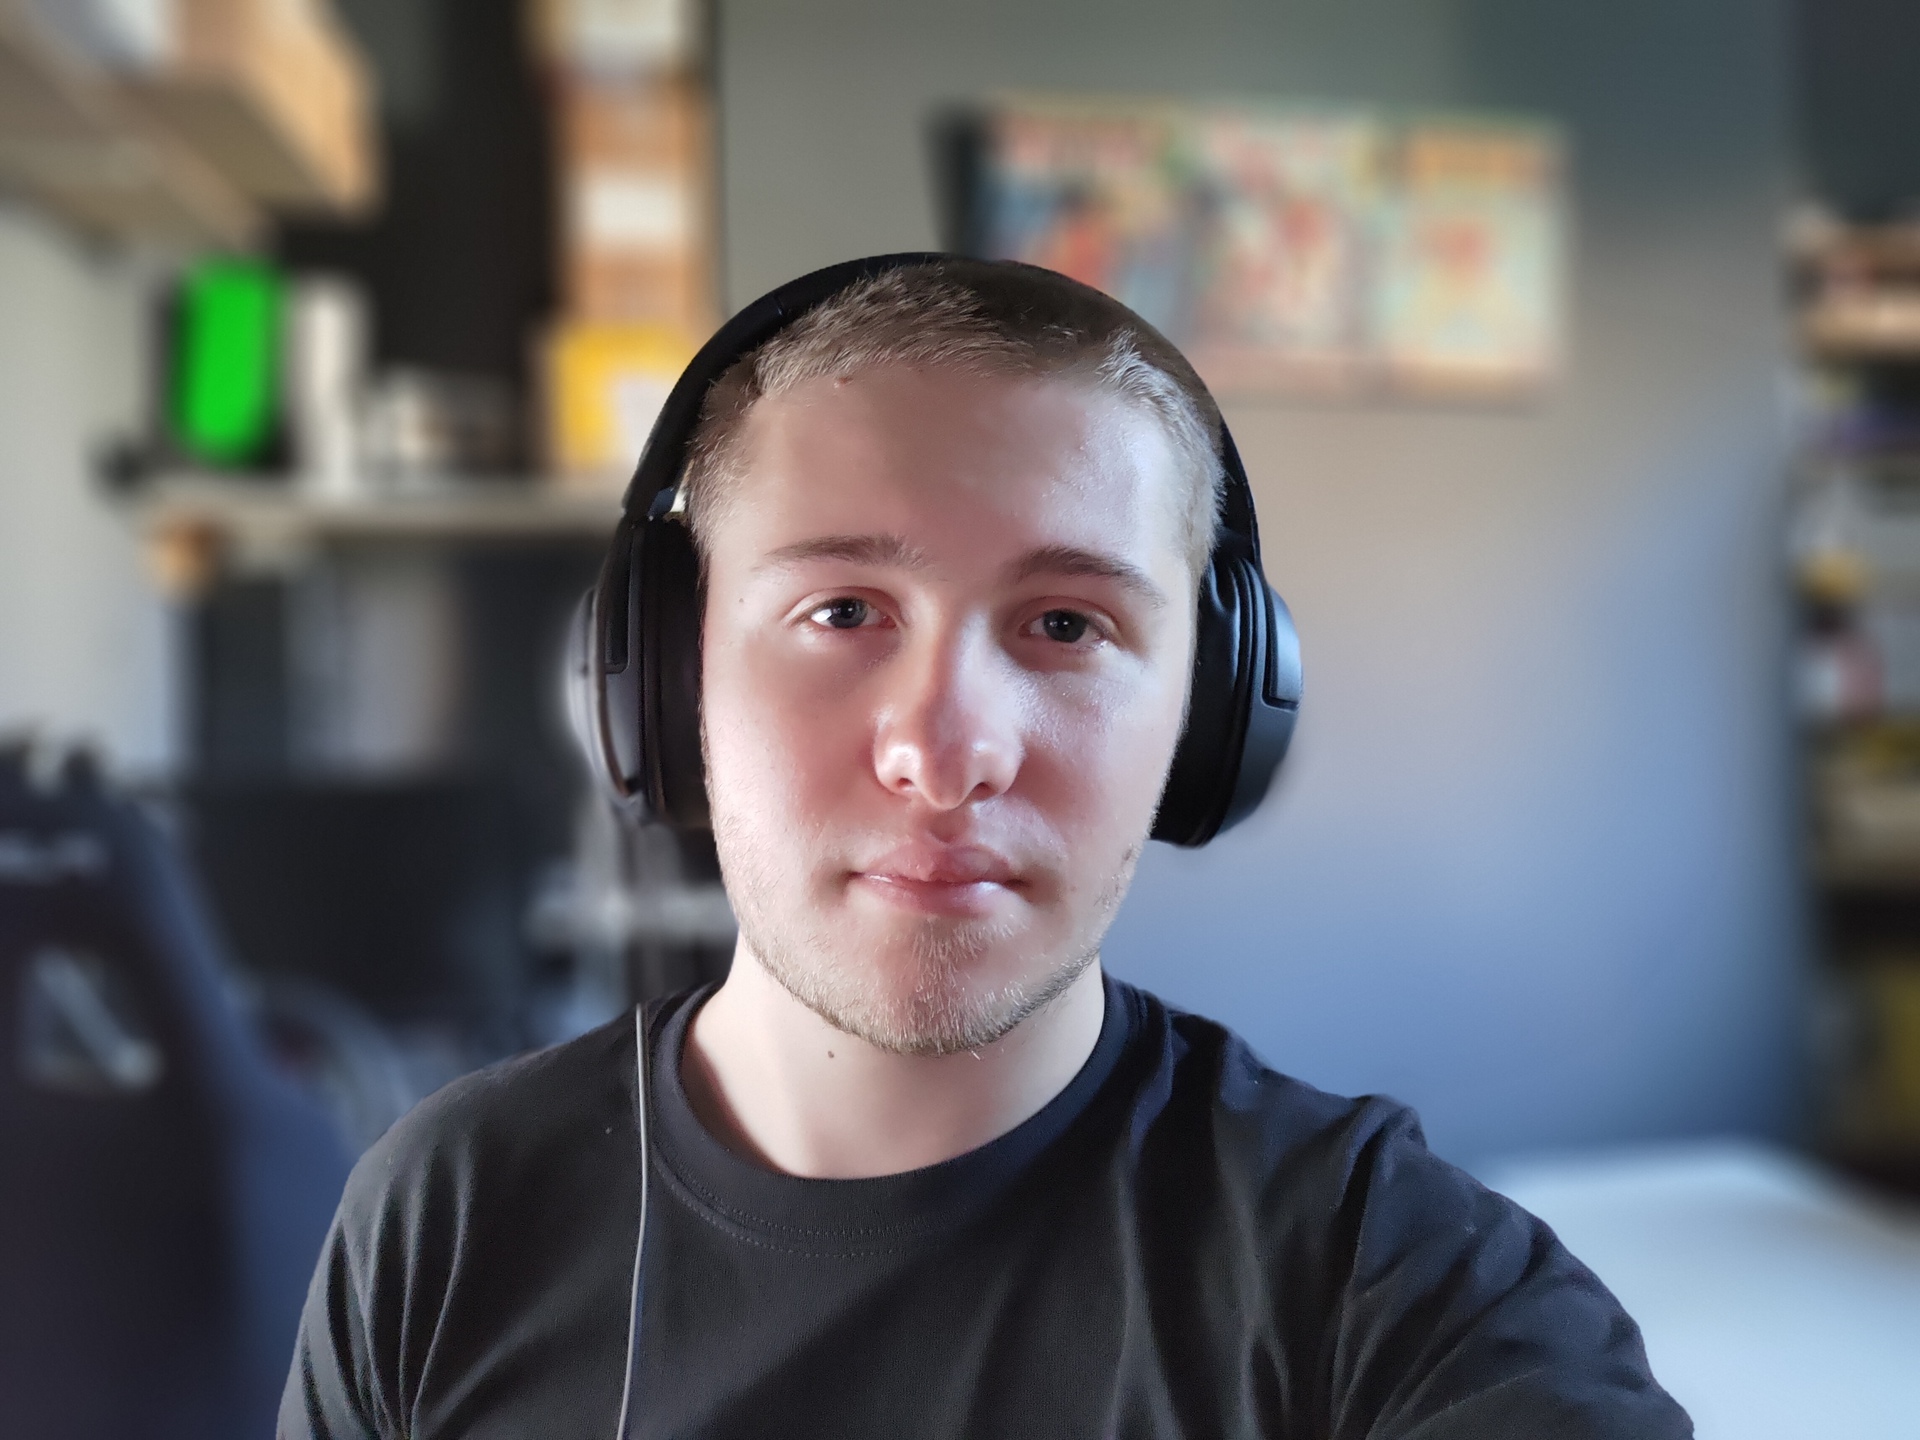 ASUS Zenfone 7 Pro main camera portrait selfie sample in low light with headphones